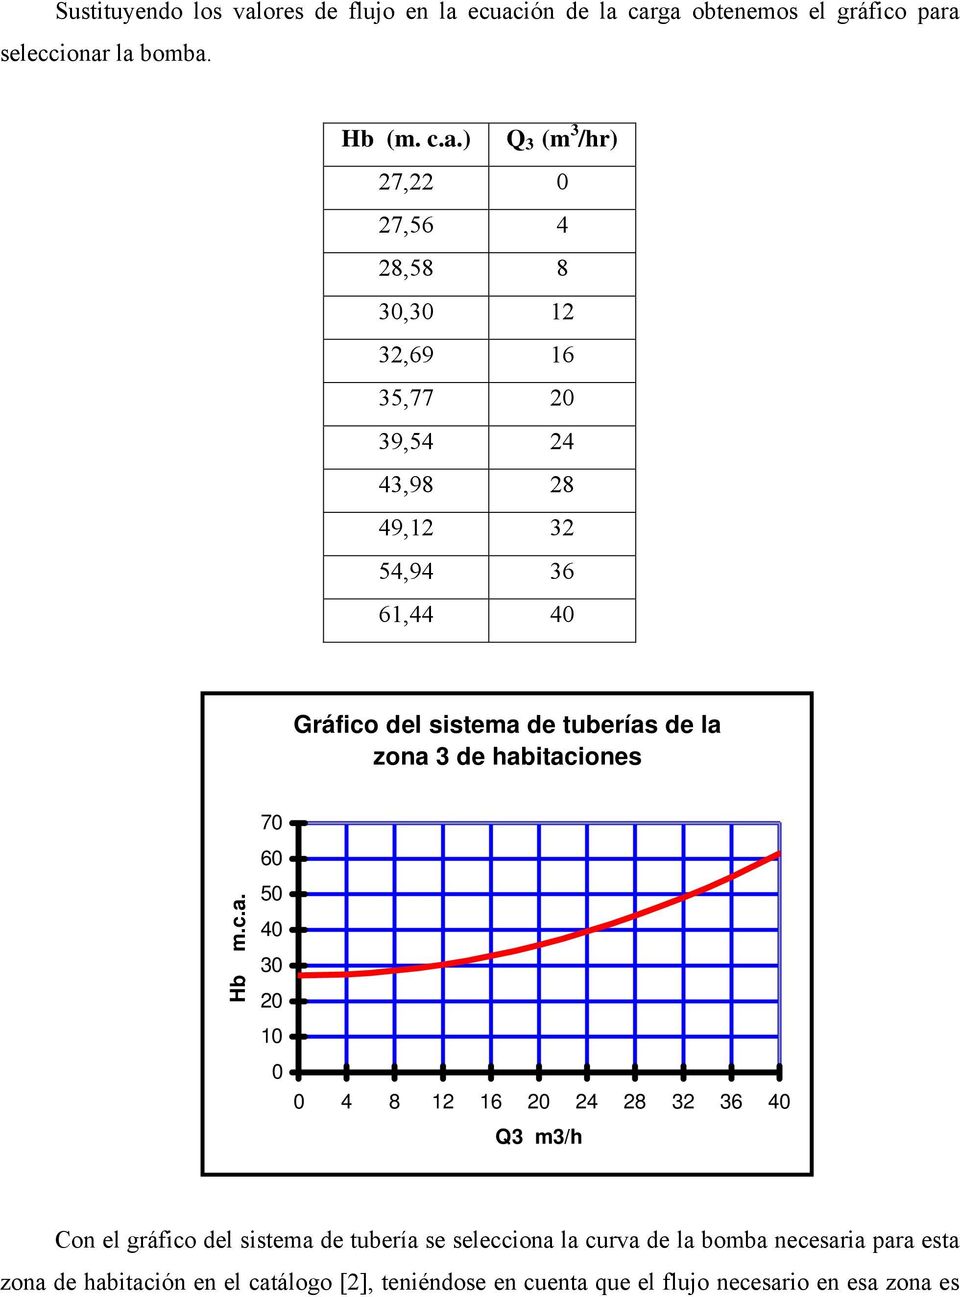 ecuación de la carga obtenemos el gráfico para seleccionar la bomba. Hb (m. c.a.) Q 3 (m 3 /hr) 7, 0 7,56 4 8,58 8 30,30 1 3,69 16